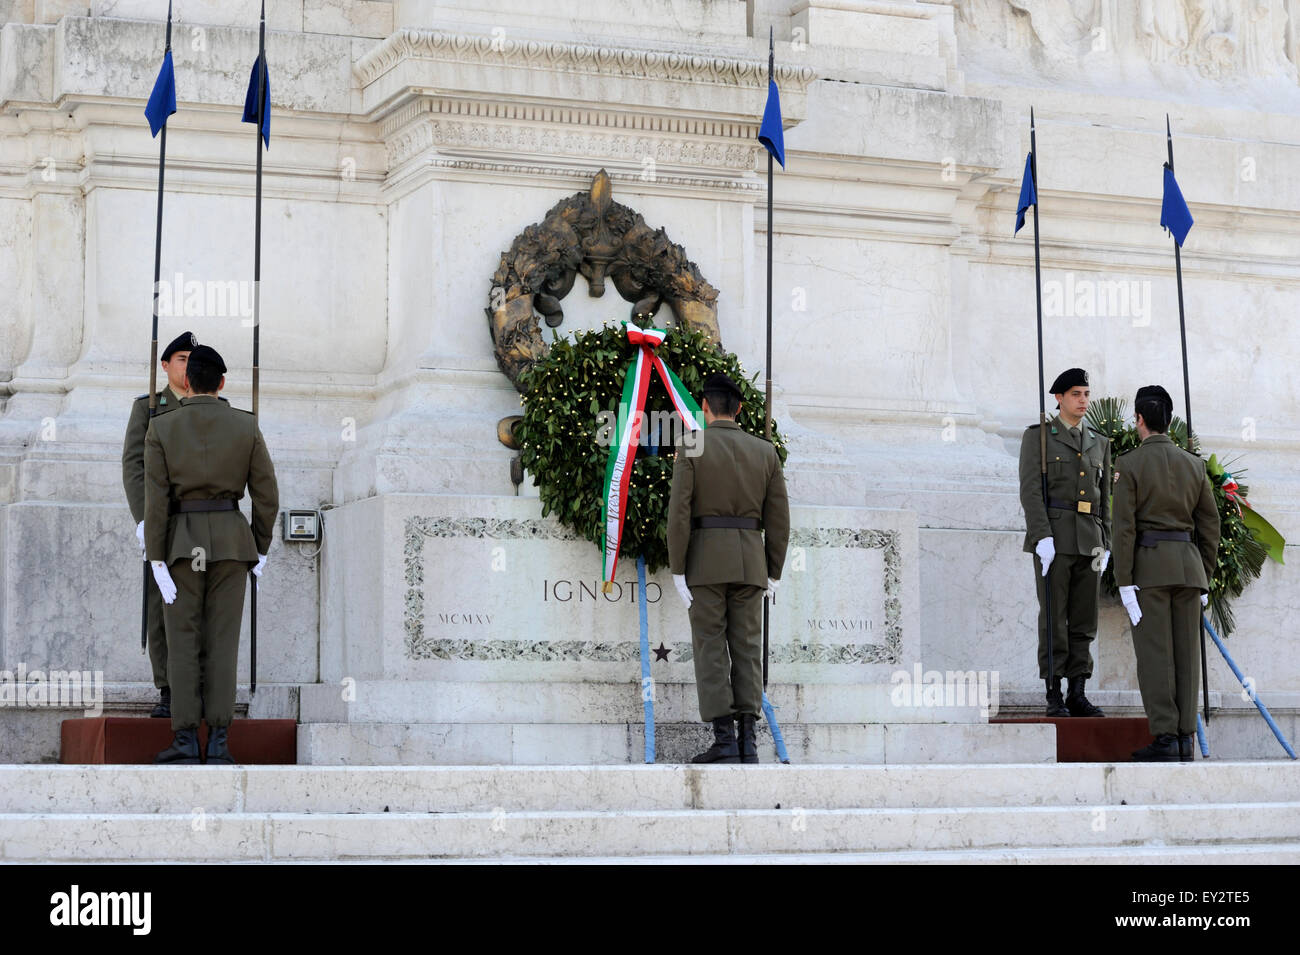 Italie, Rome, Piazza Venezia, Vittoriano, autel de la patrie, monument au soldat inconnu, relève de la garde Banque D'Images